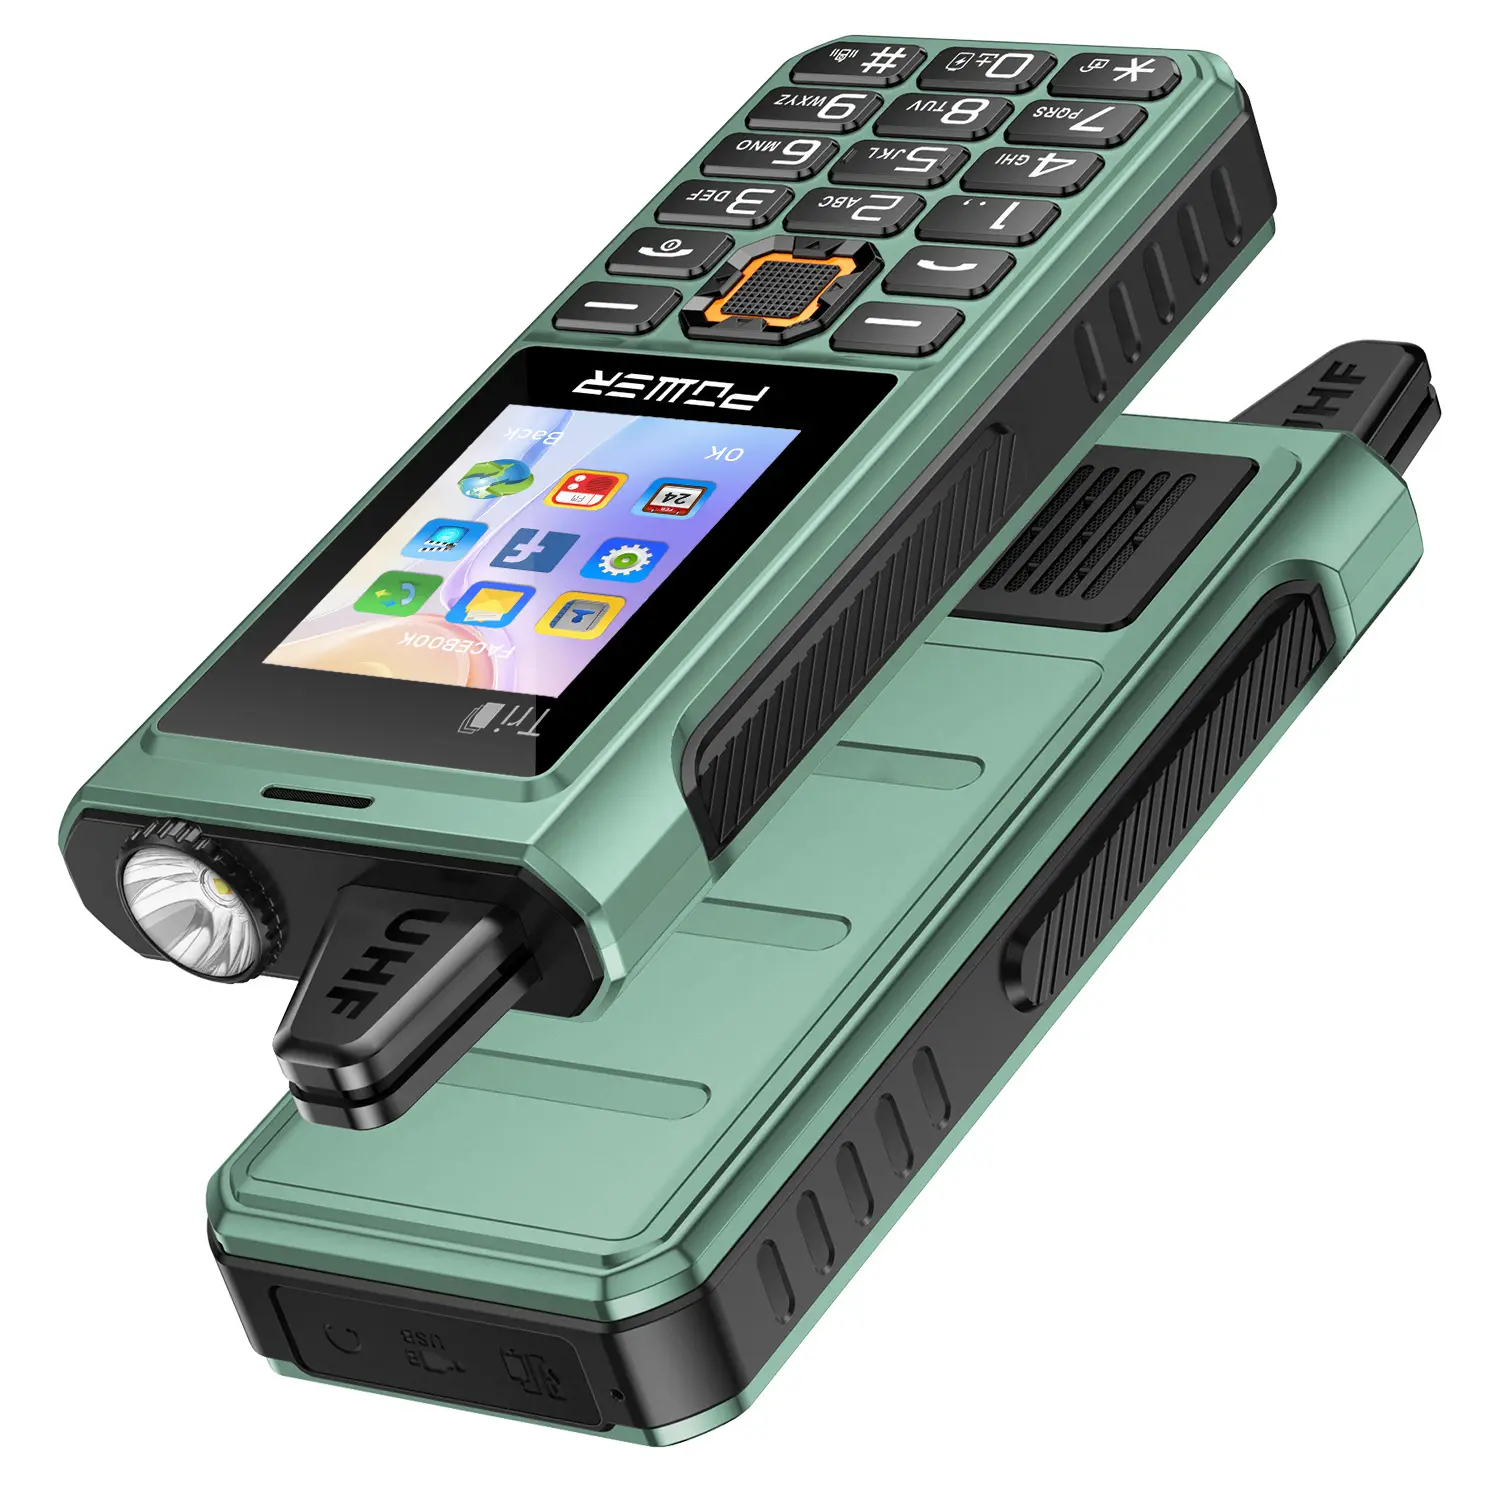 Novo design T1 alta qualidade telefone portátil telefone móvel on-line grande fonte grande botão idosos teclado do telefone móvel